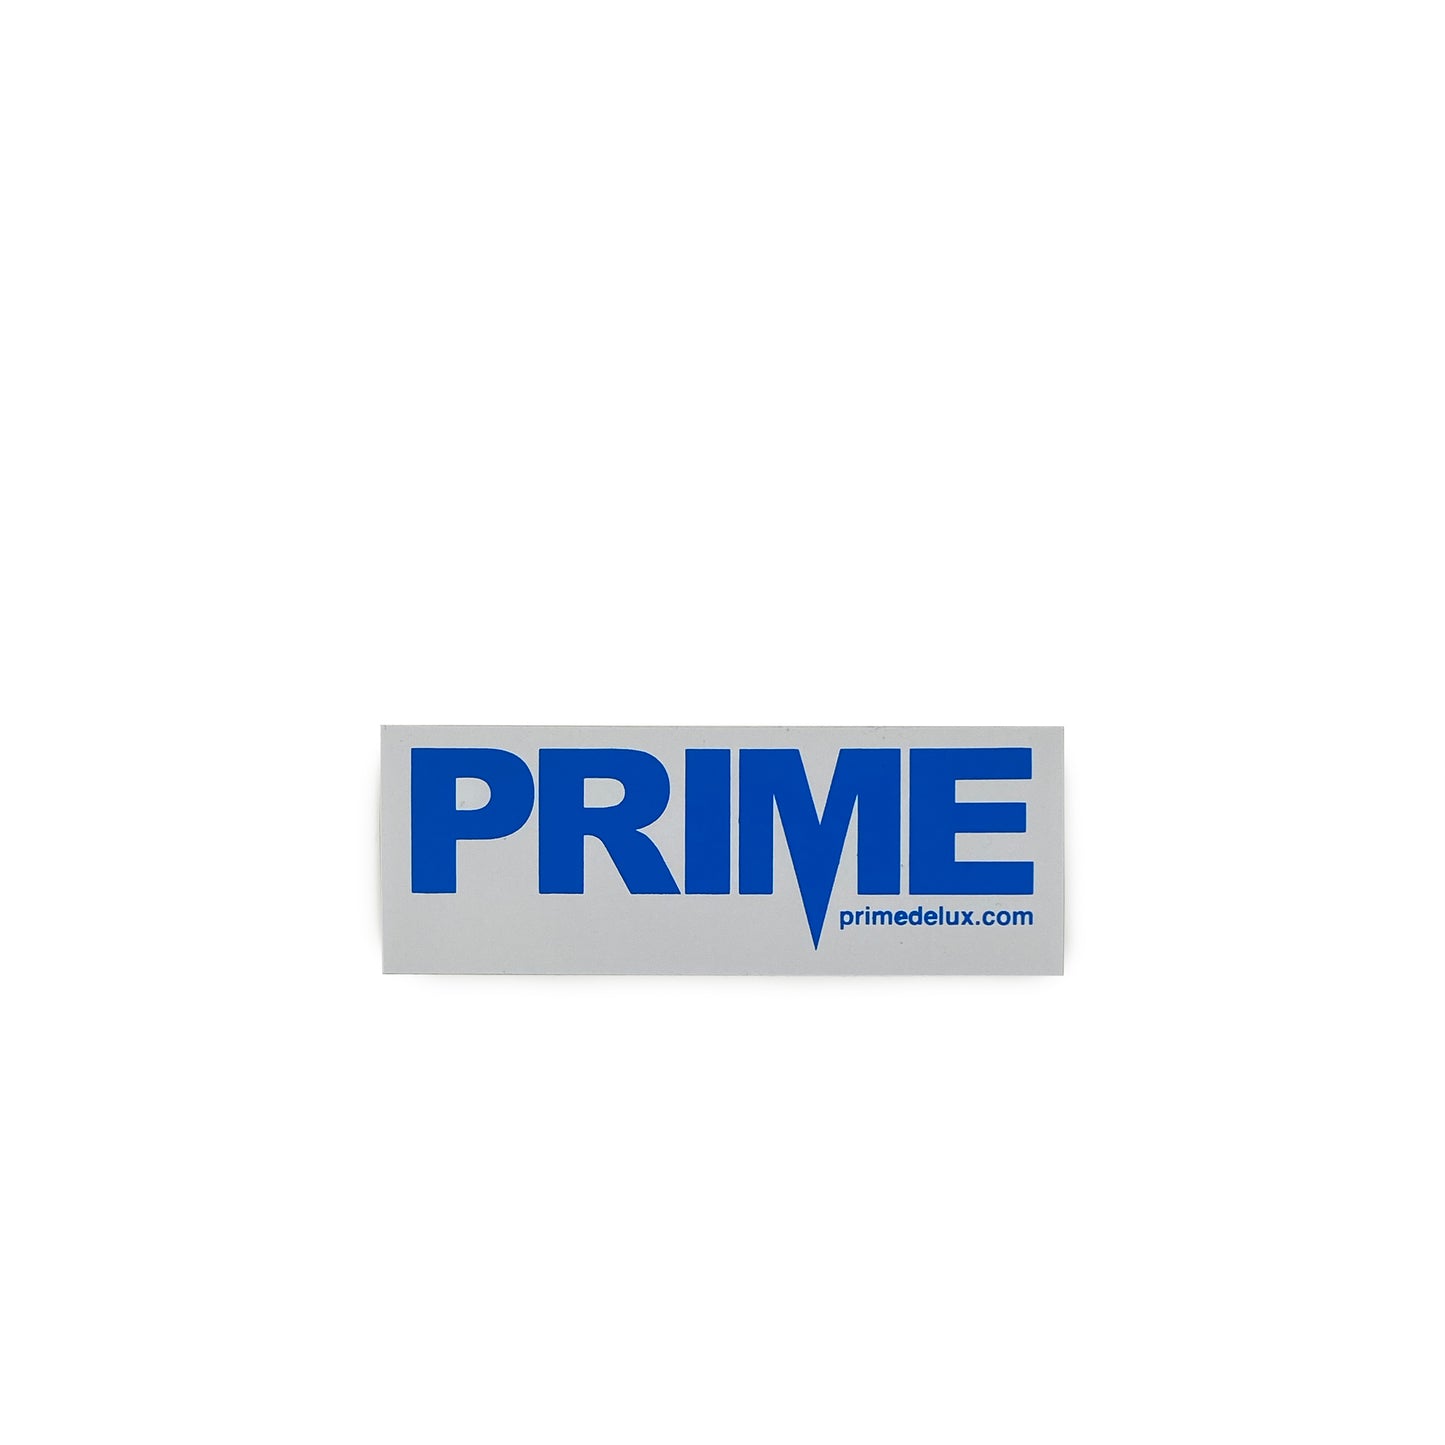 Prime Delux OG Sticker M - Blue / White - Prime Delux Store